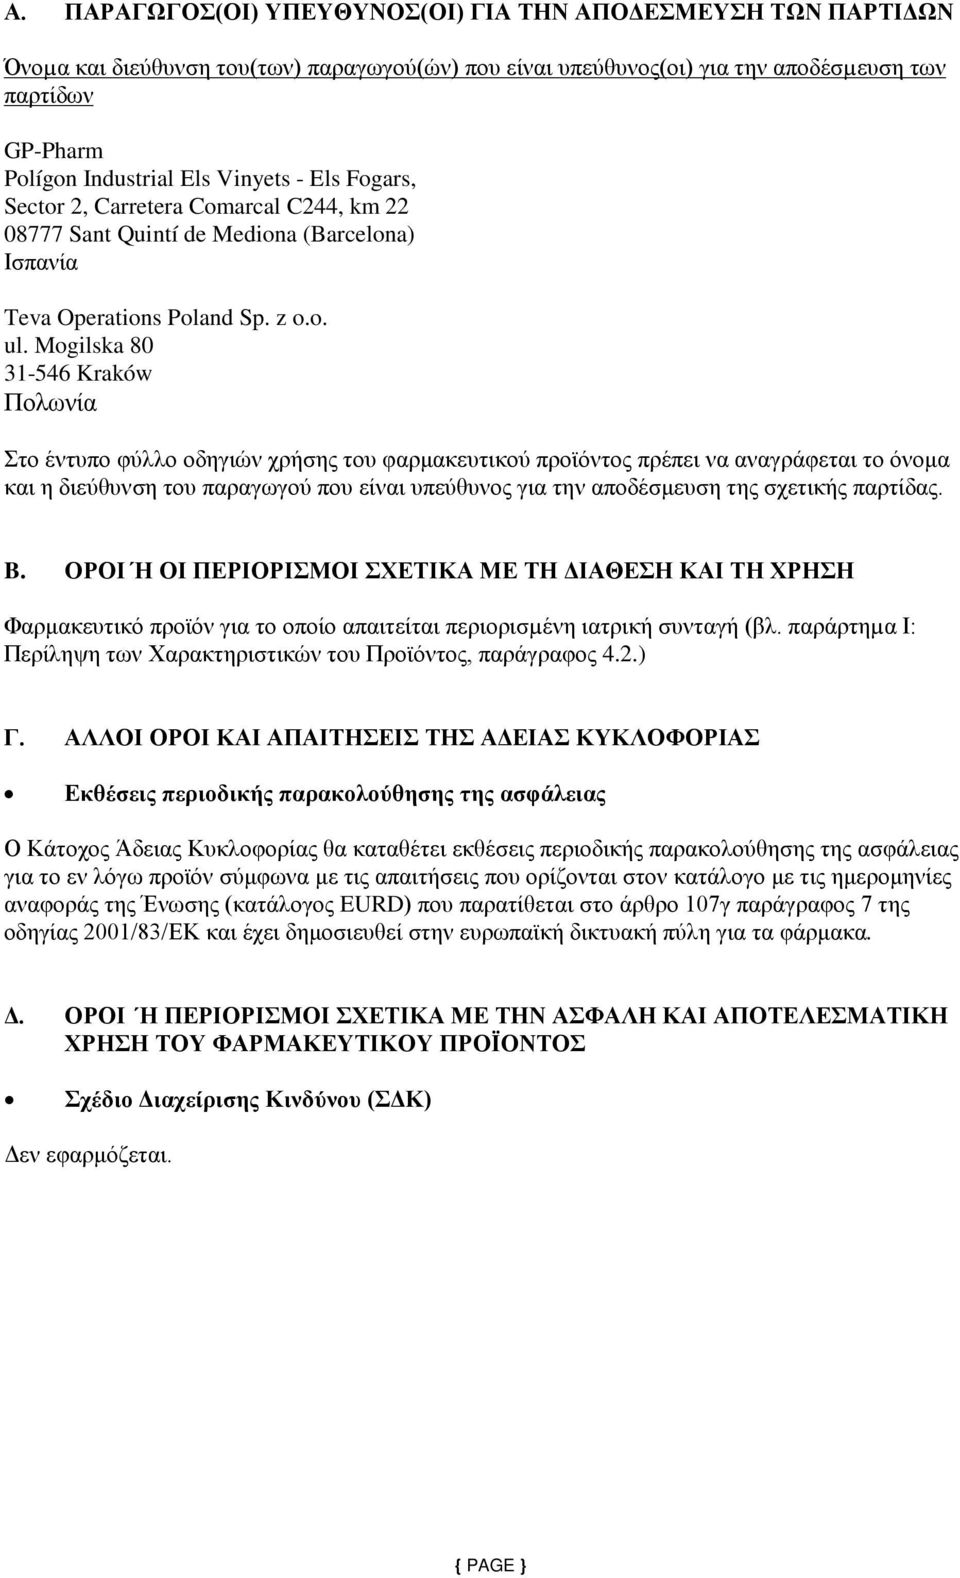 Mogilska 80 31-546 Kraków Πολωνία Στο έντυπο φύλλο οδηγιών χρήσης του φαρμακευτικού προϊόντος πρέπει να αναγράφεται το όνομα και η διεύθυνση του παραγωγού που είναι υπεύθυνος για την αποδέσμευση της